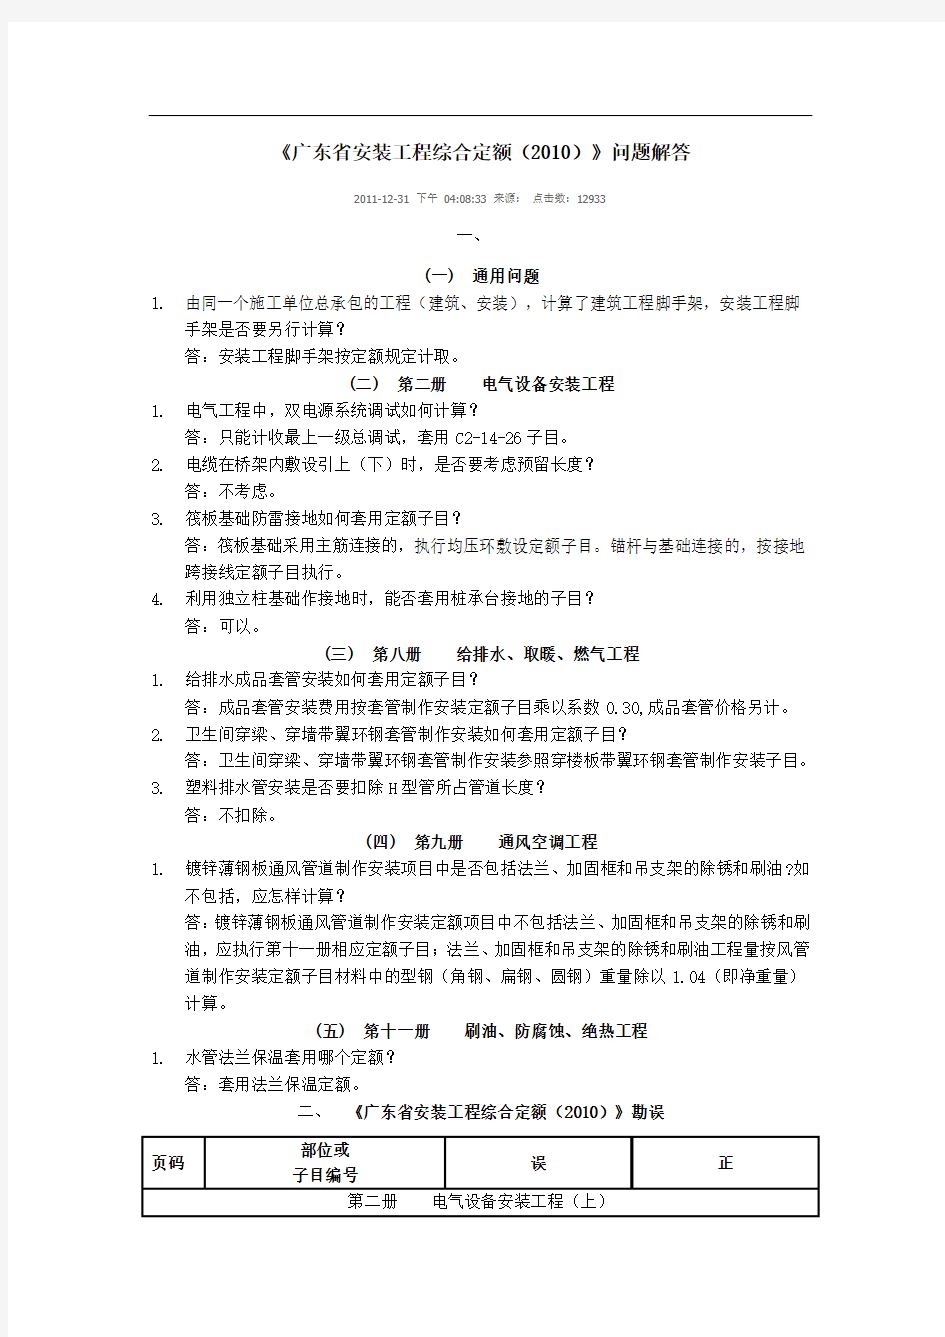 @《广东省安装工程综合定额(2010)》问题解答